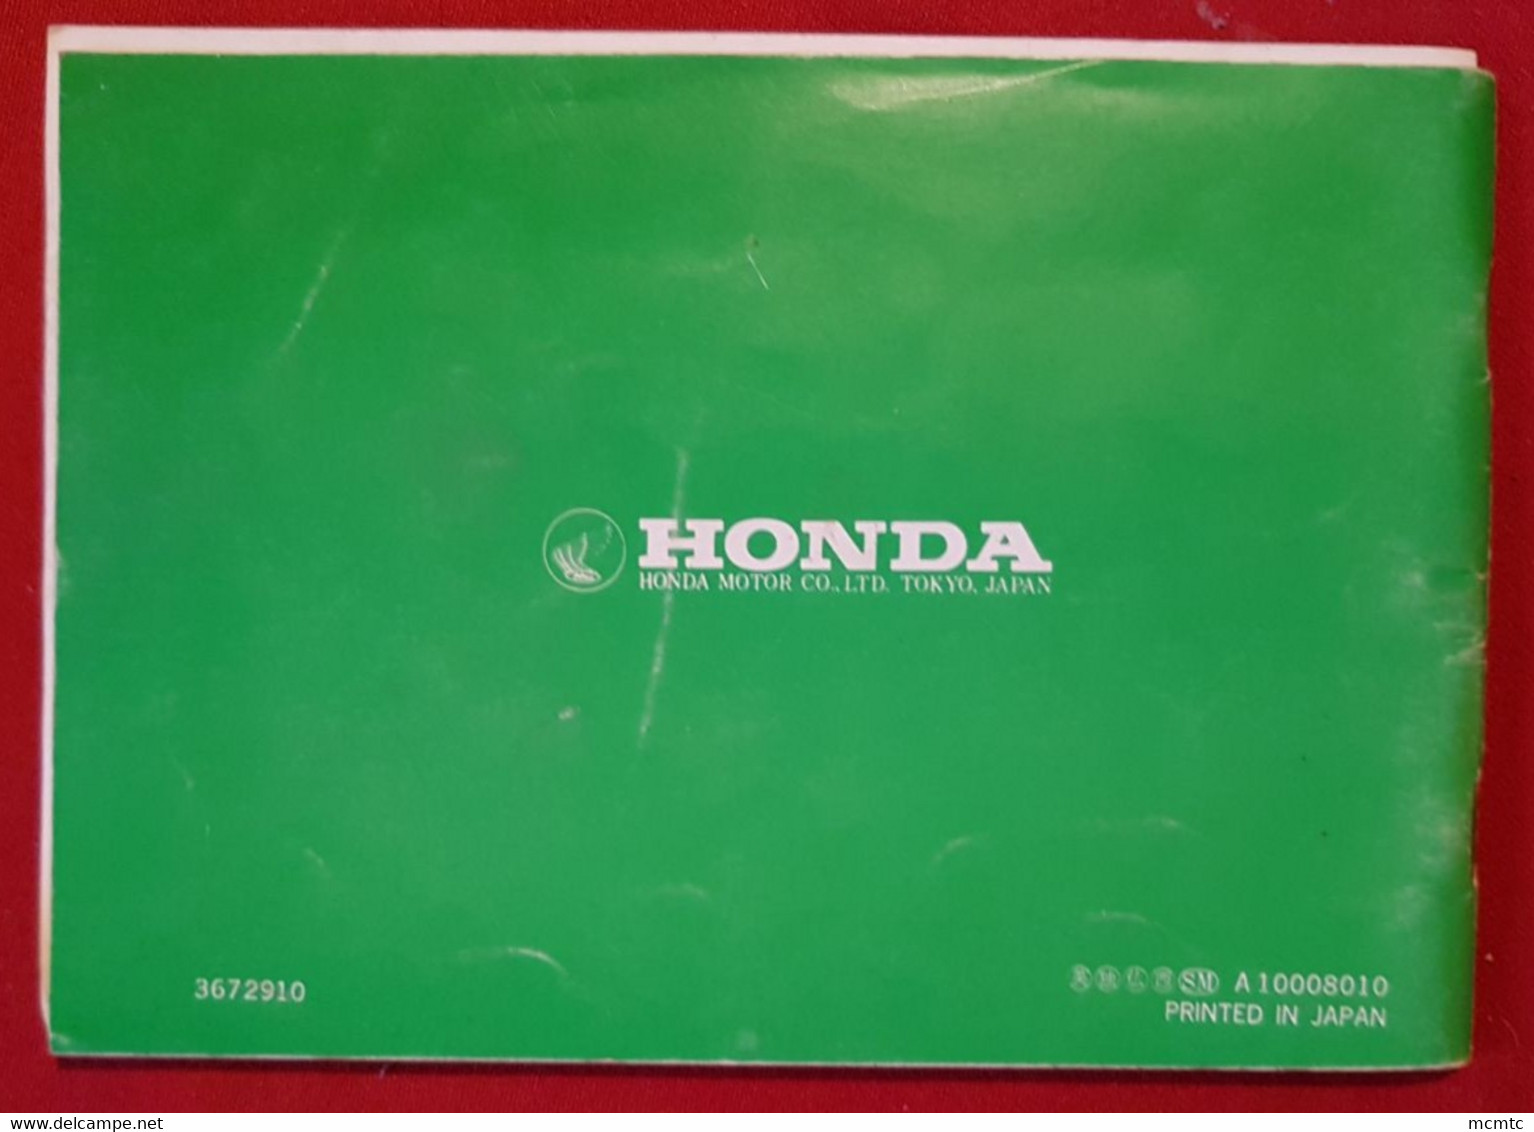 Manuel De L'utilisateur -  Motoculteur  Honda F250 - Giardinaggio